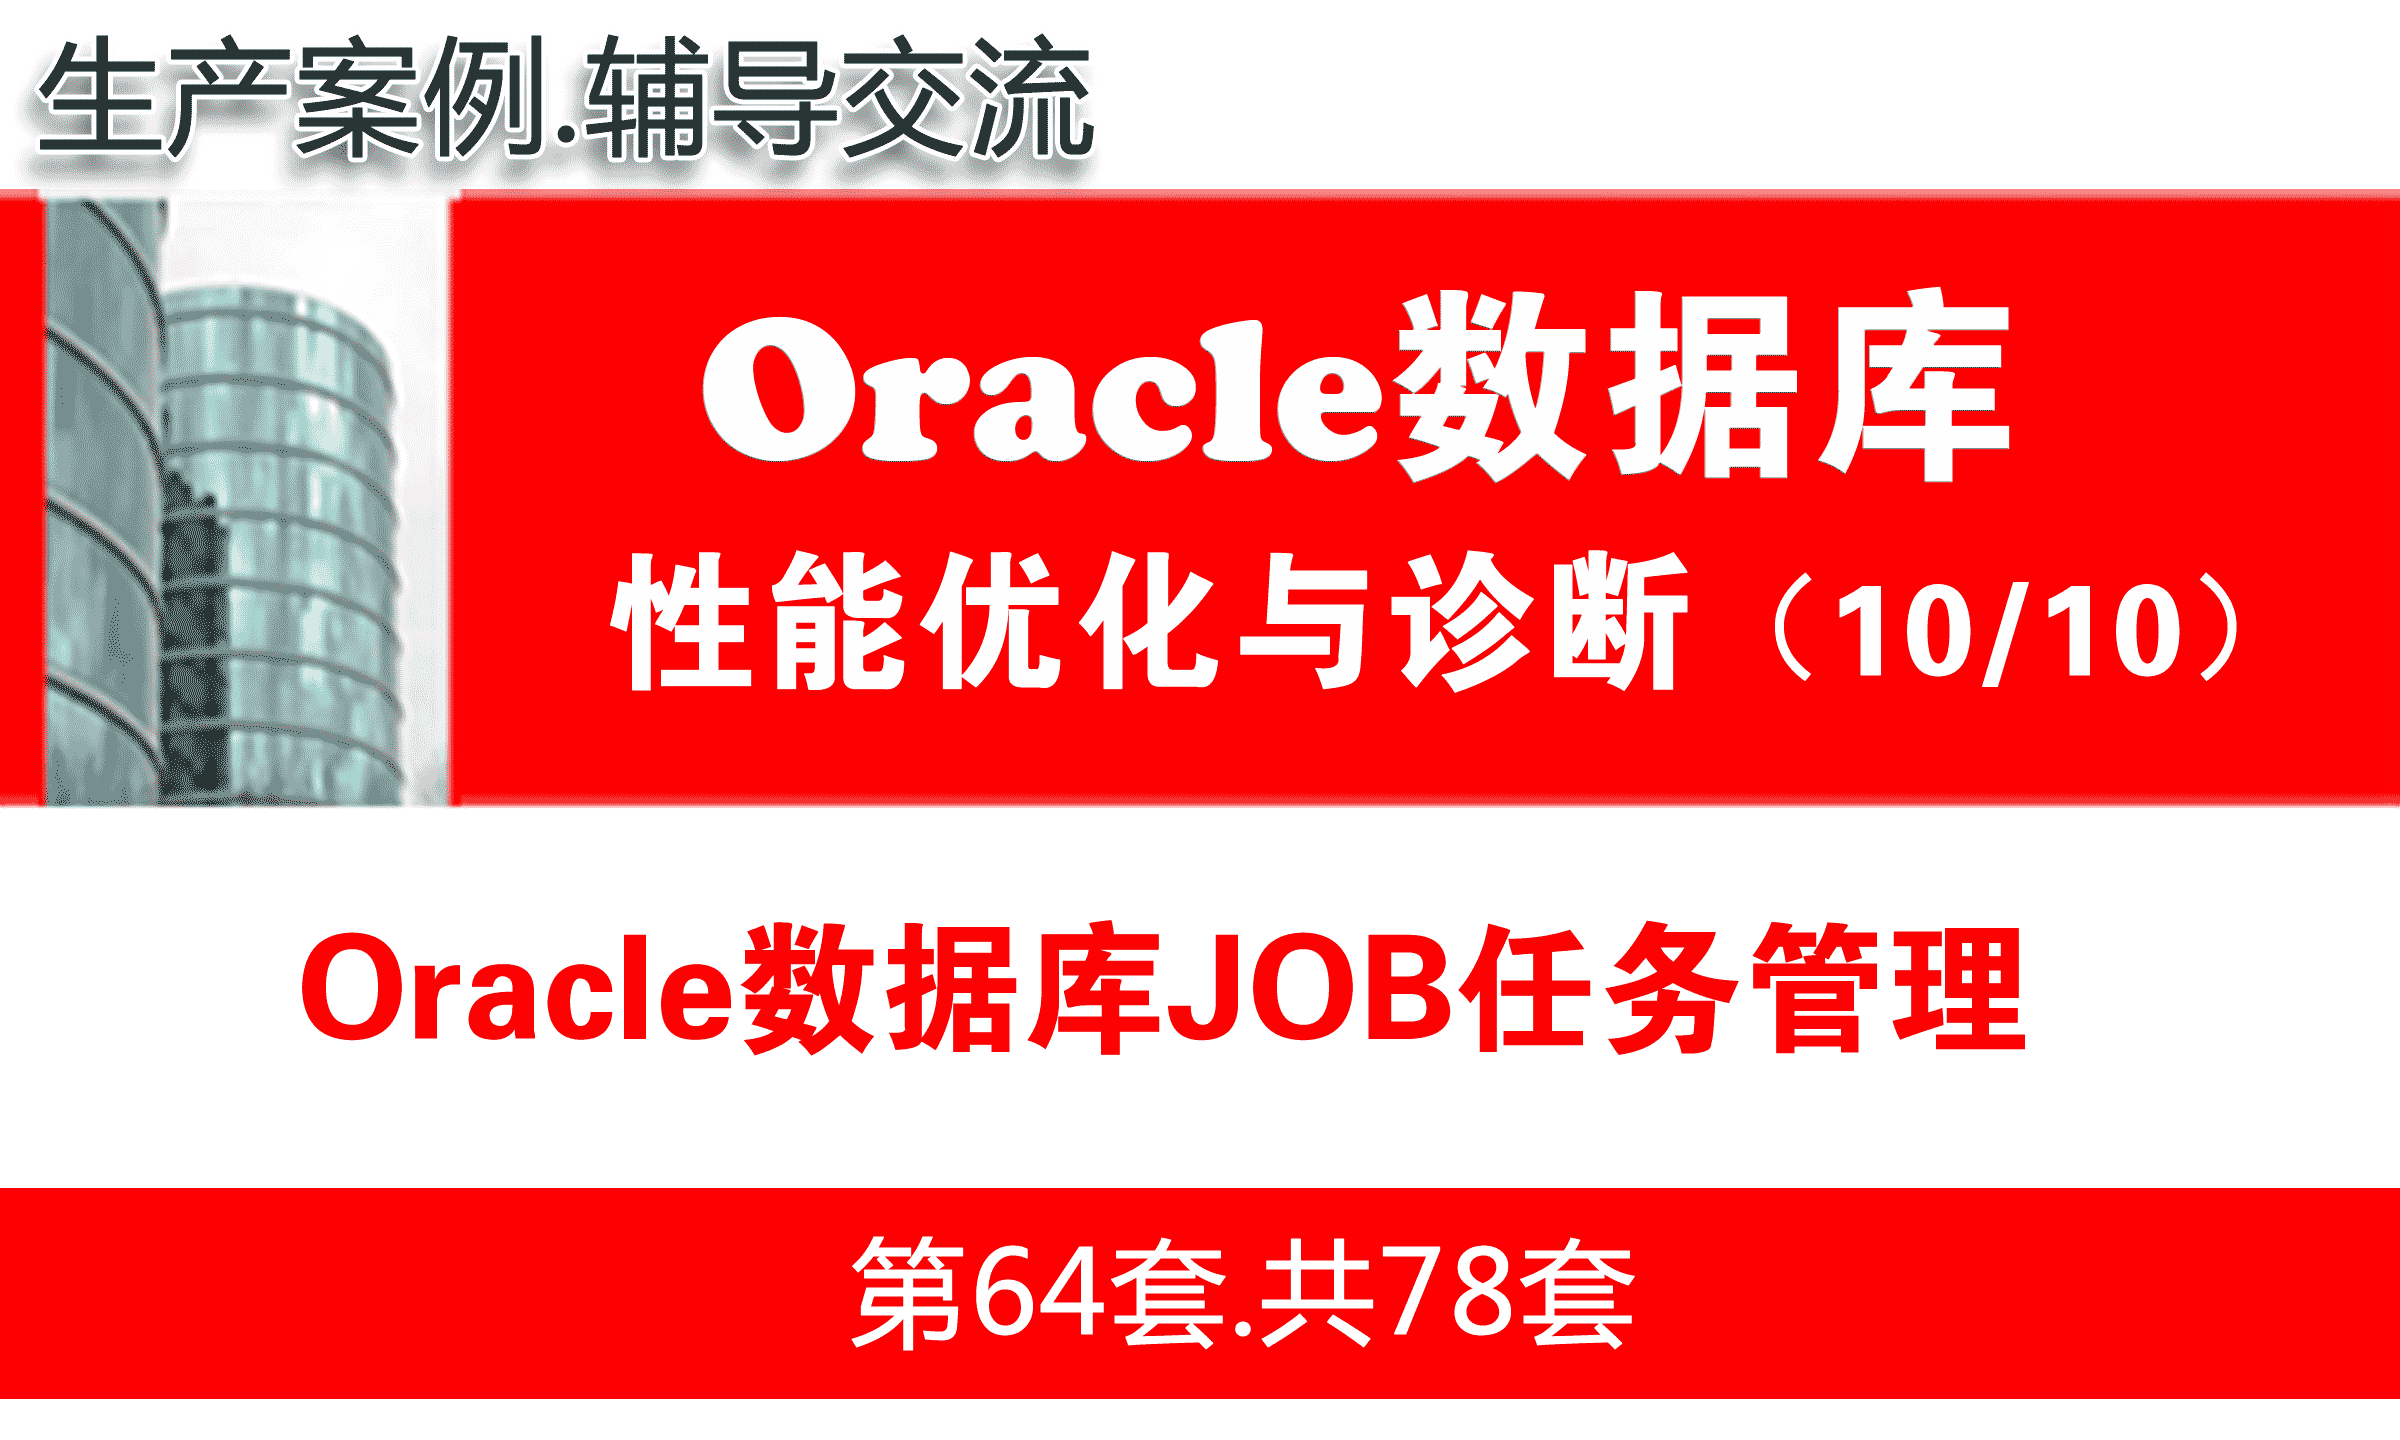 Oracle数据库JOB任务管理_Oracle性能优化与故障诊断教程10